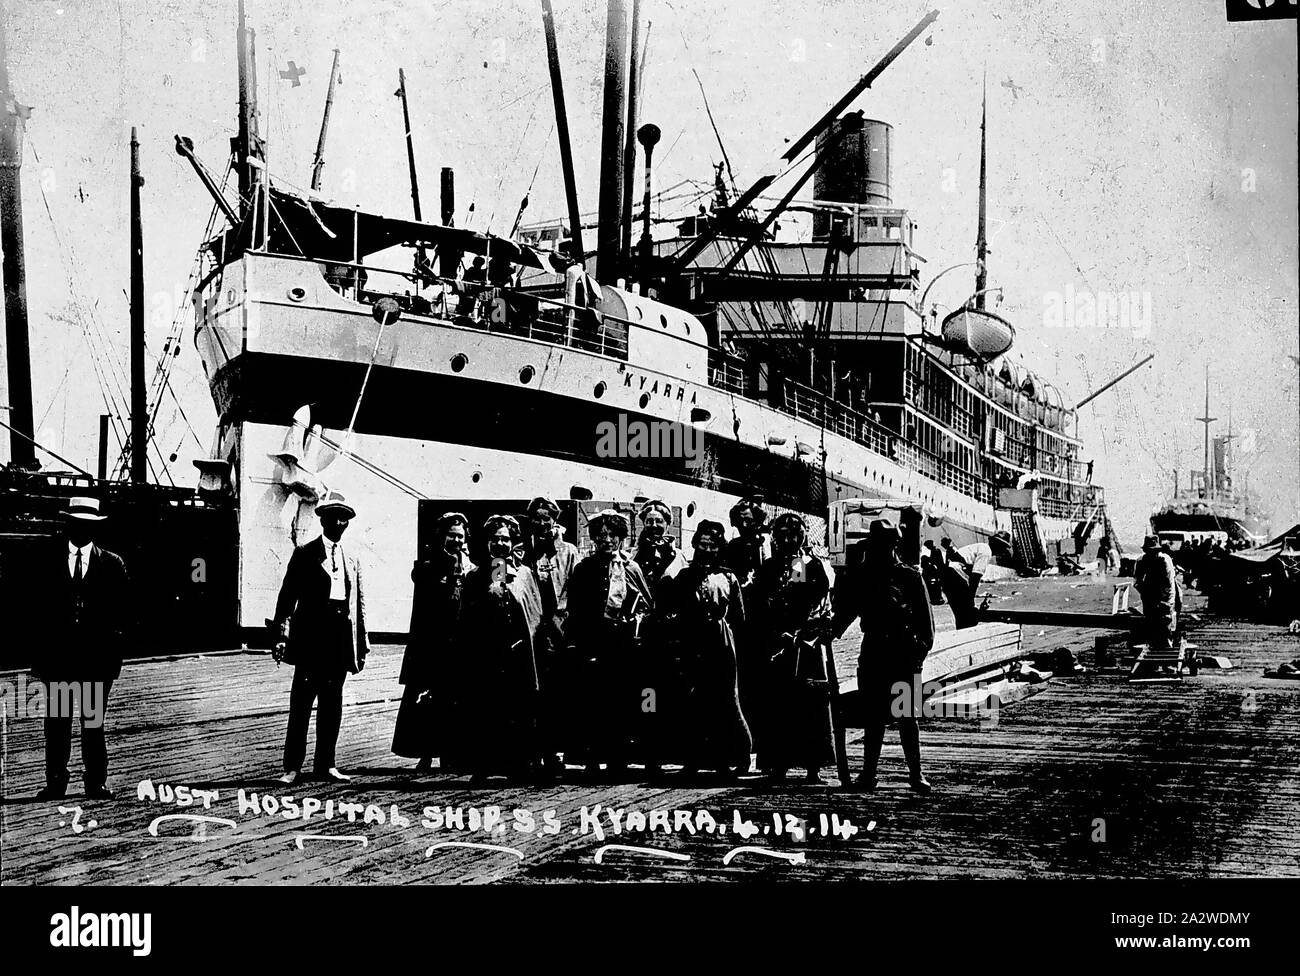 Negativo - Infermieri & SS Kyarra, Adelaide, Australia del Sud, Dec 1914, Esercito Australiano infermieri di imbarcarsi sul AHS Kyarra ad Adelaide, Australia del Sud Foto Stock